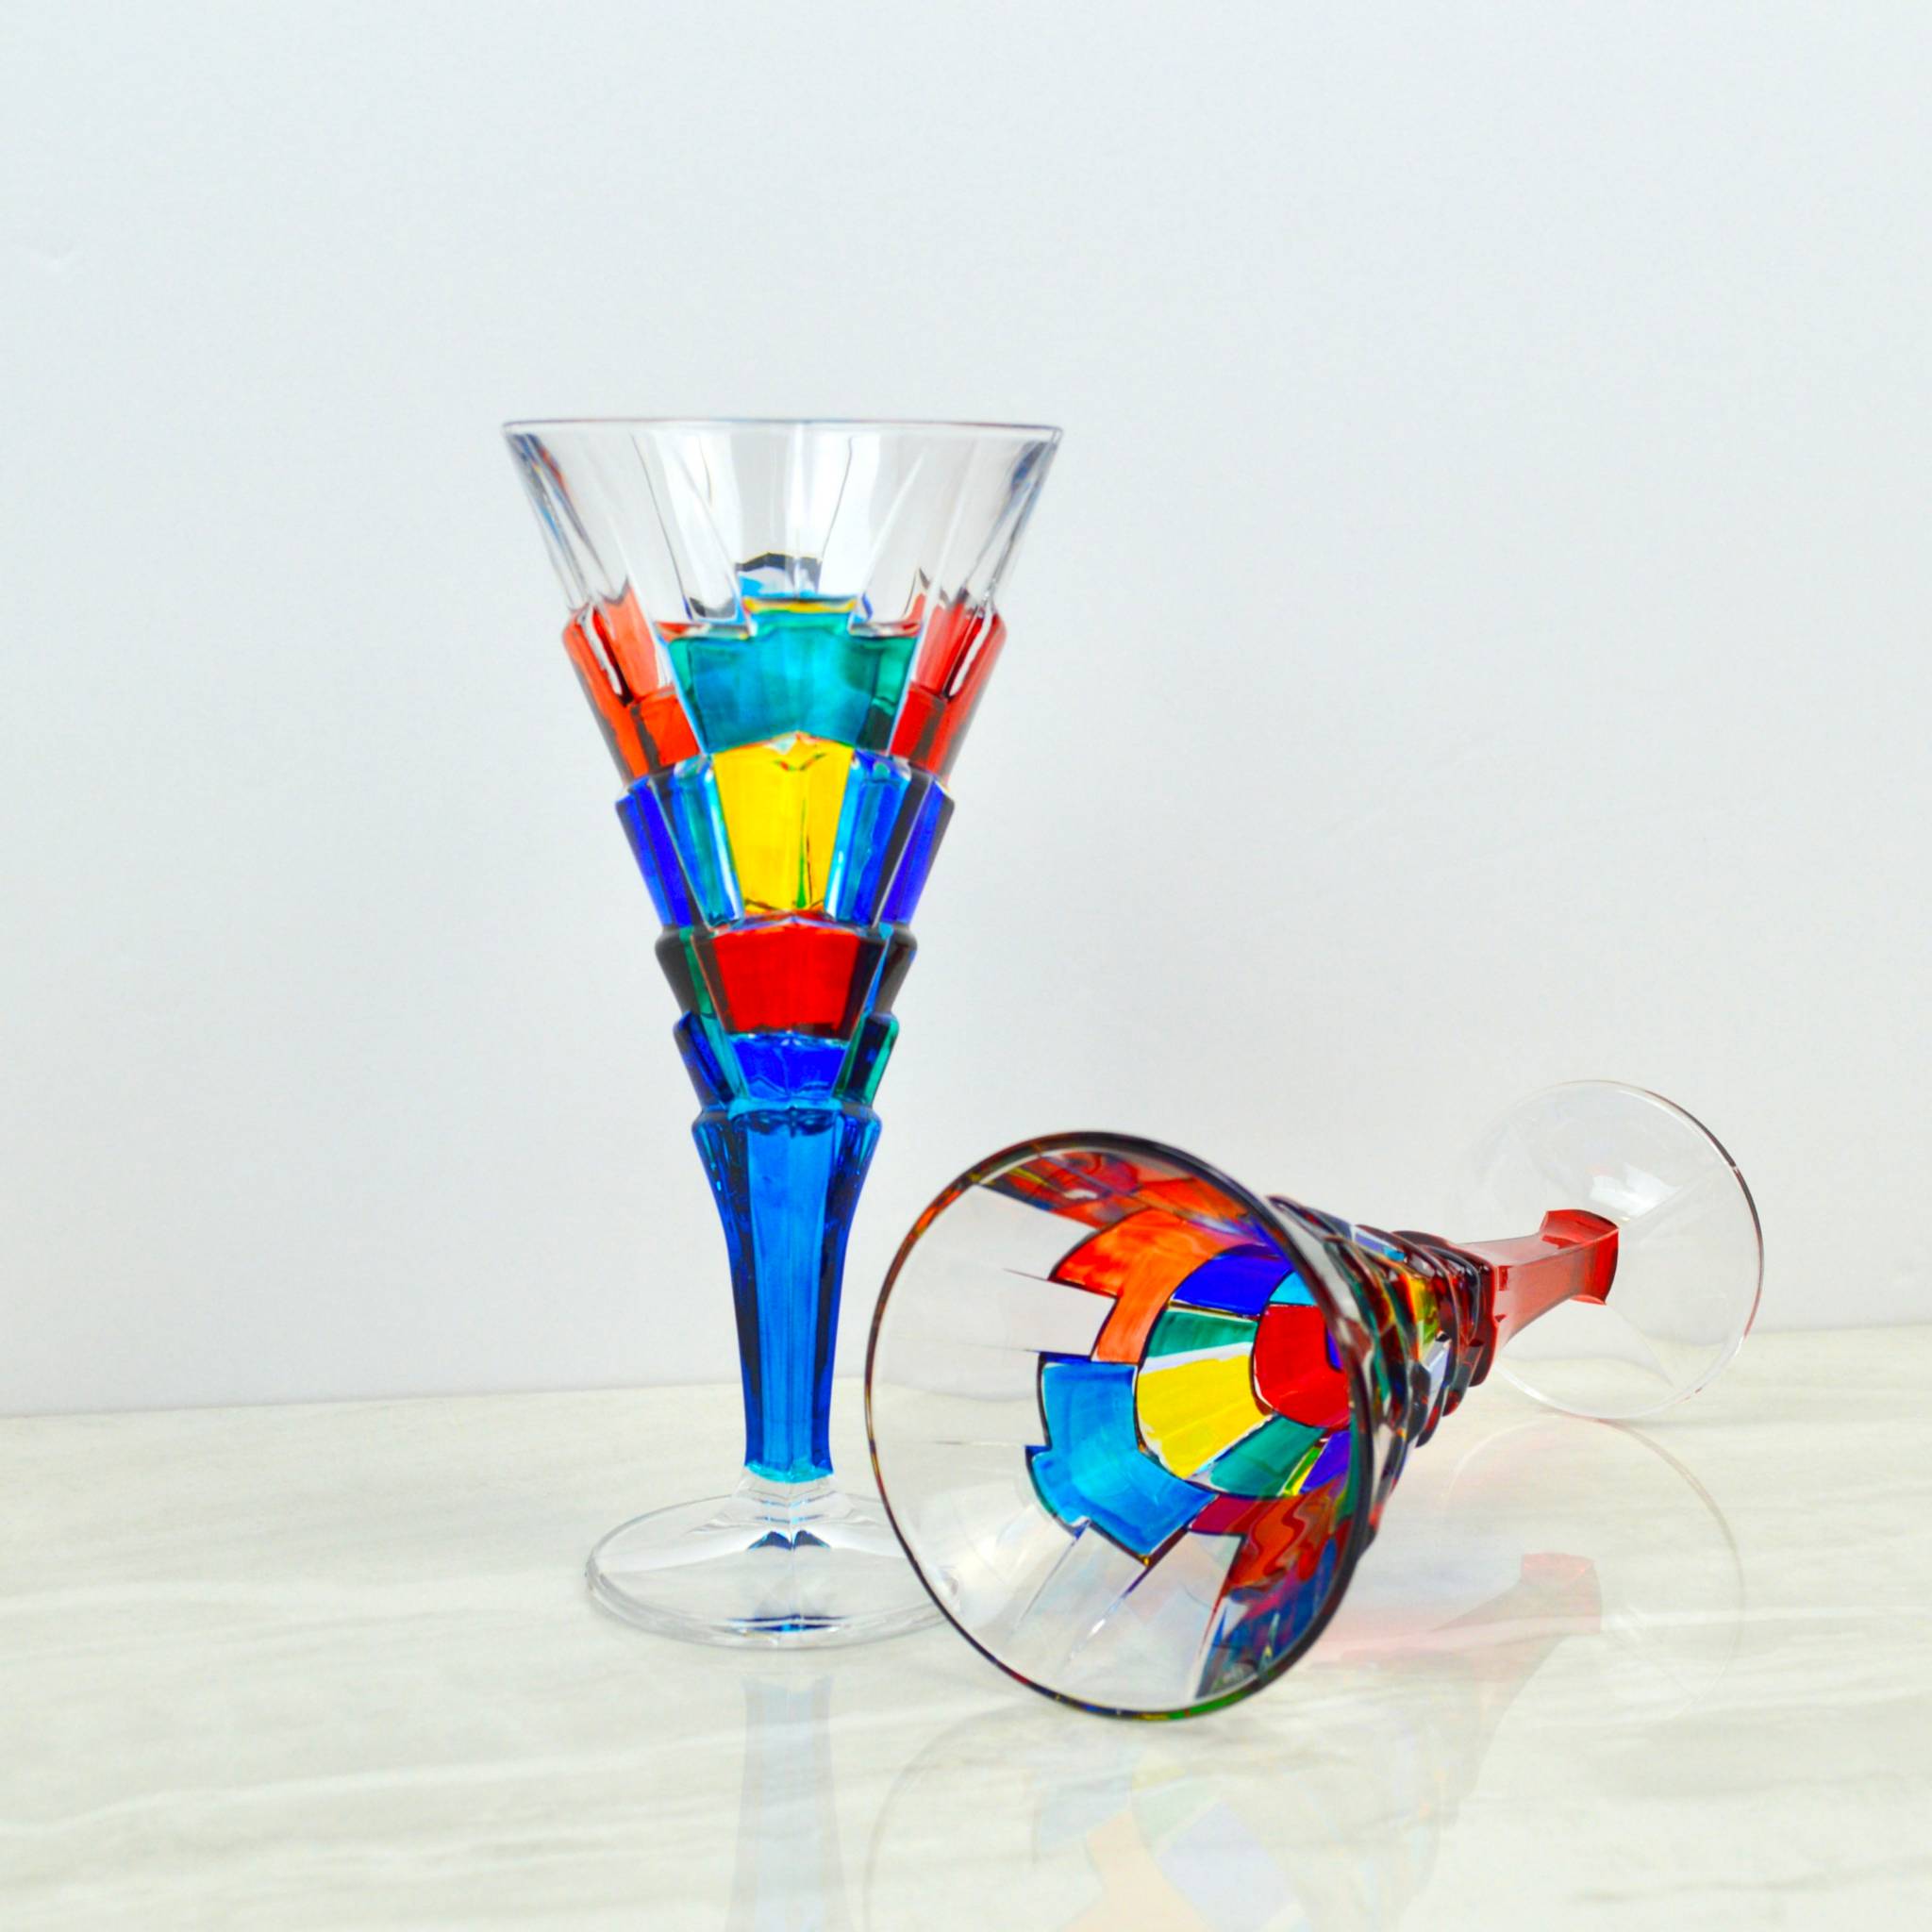 Crystalline Wine Glasses (Set of 2)